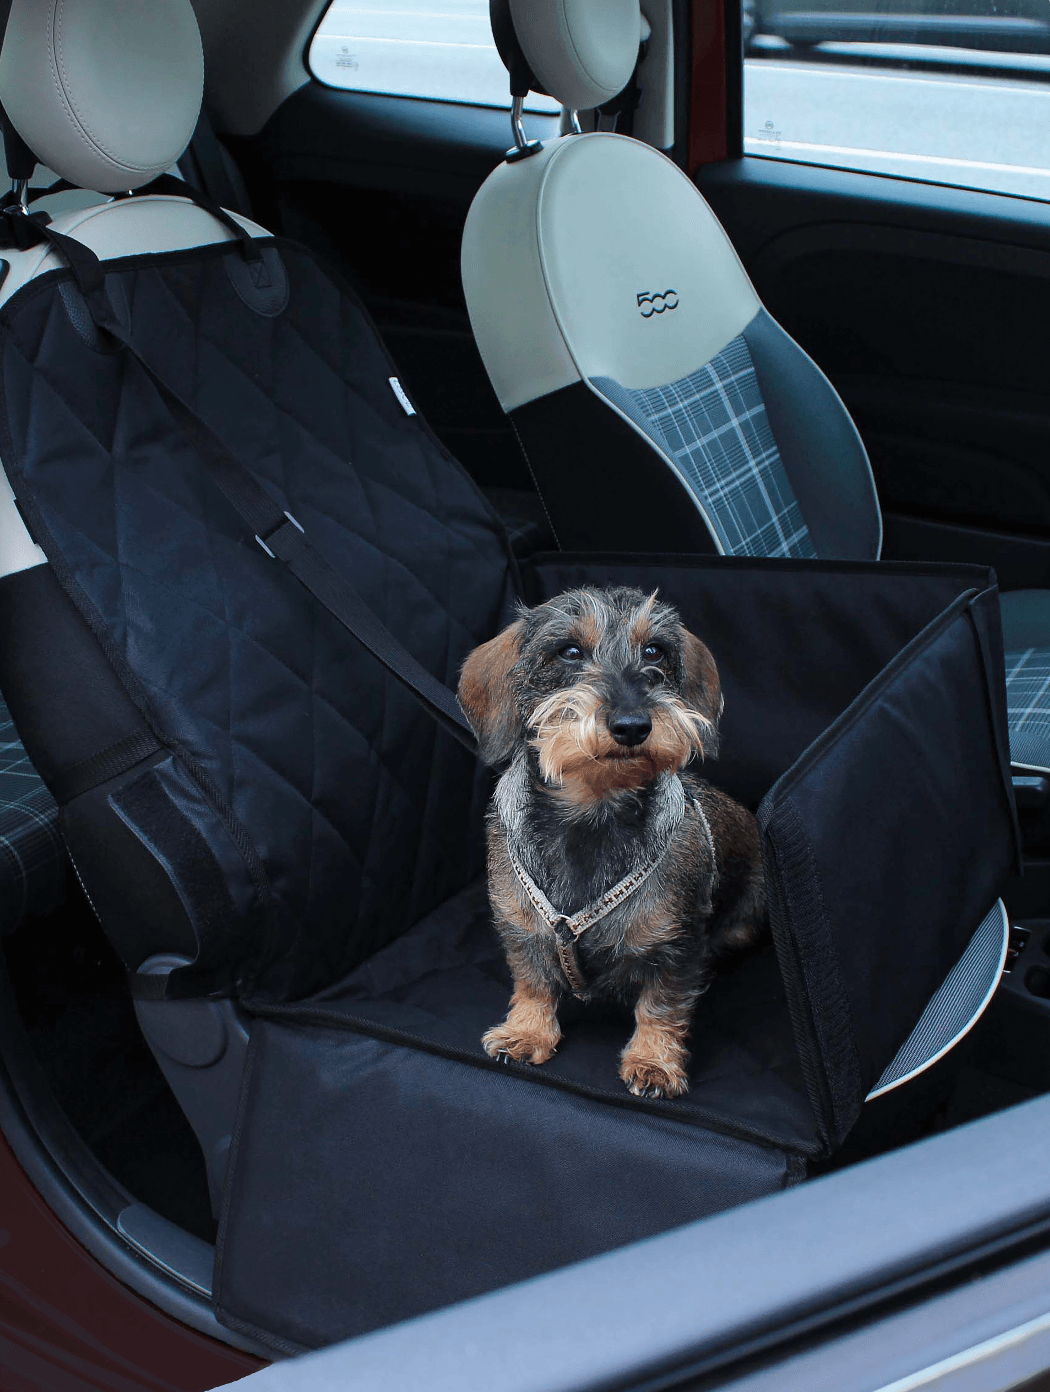 Exklusive Hunde-Autositze für ein sicheres und entspanntes Autofahren!